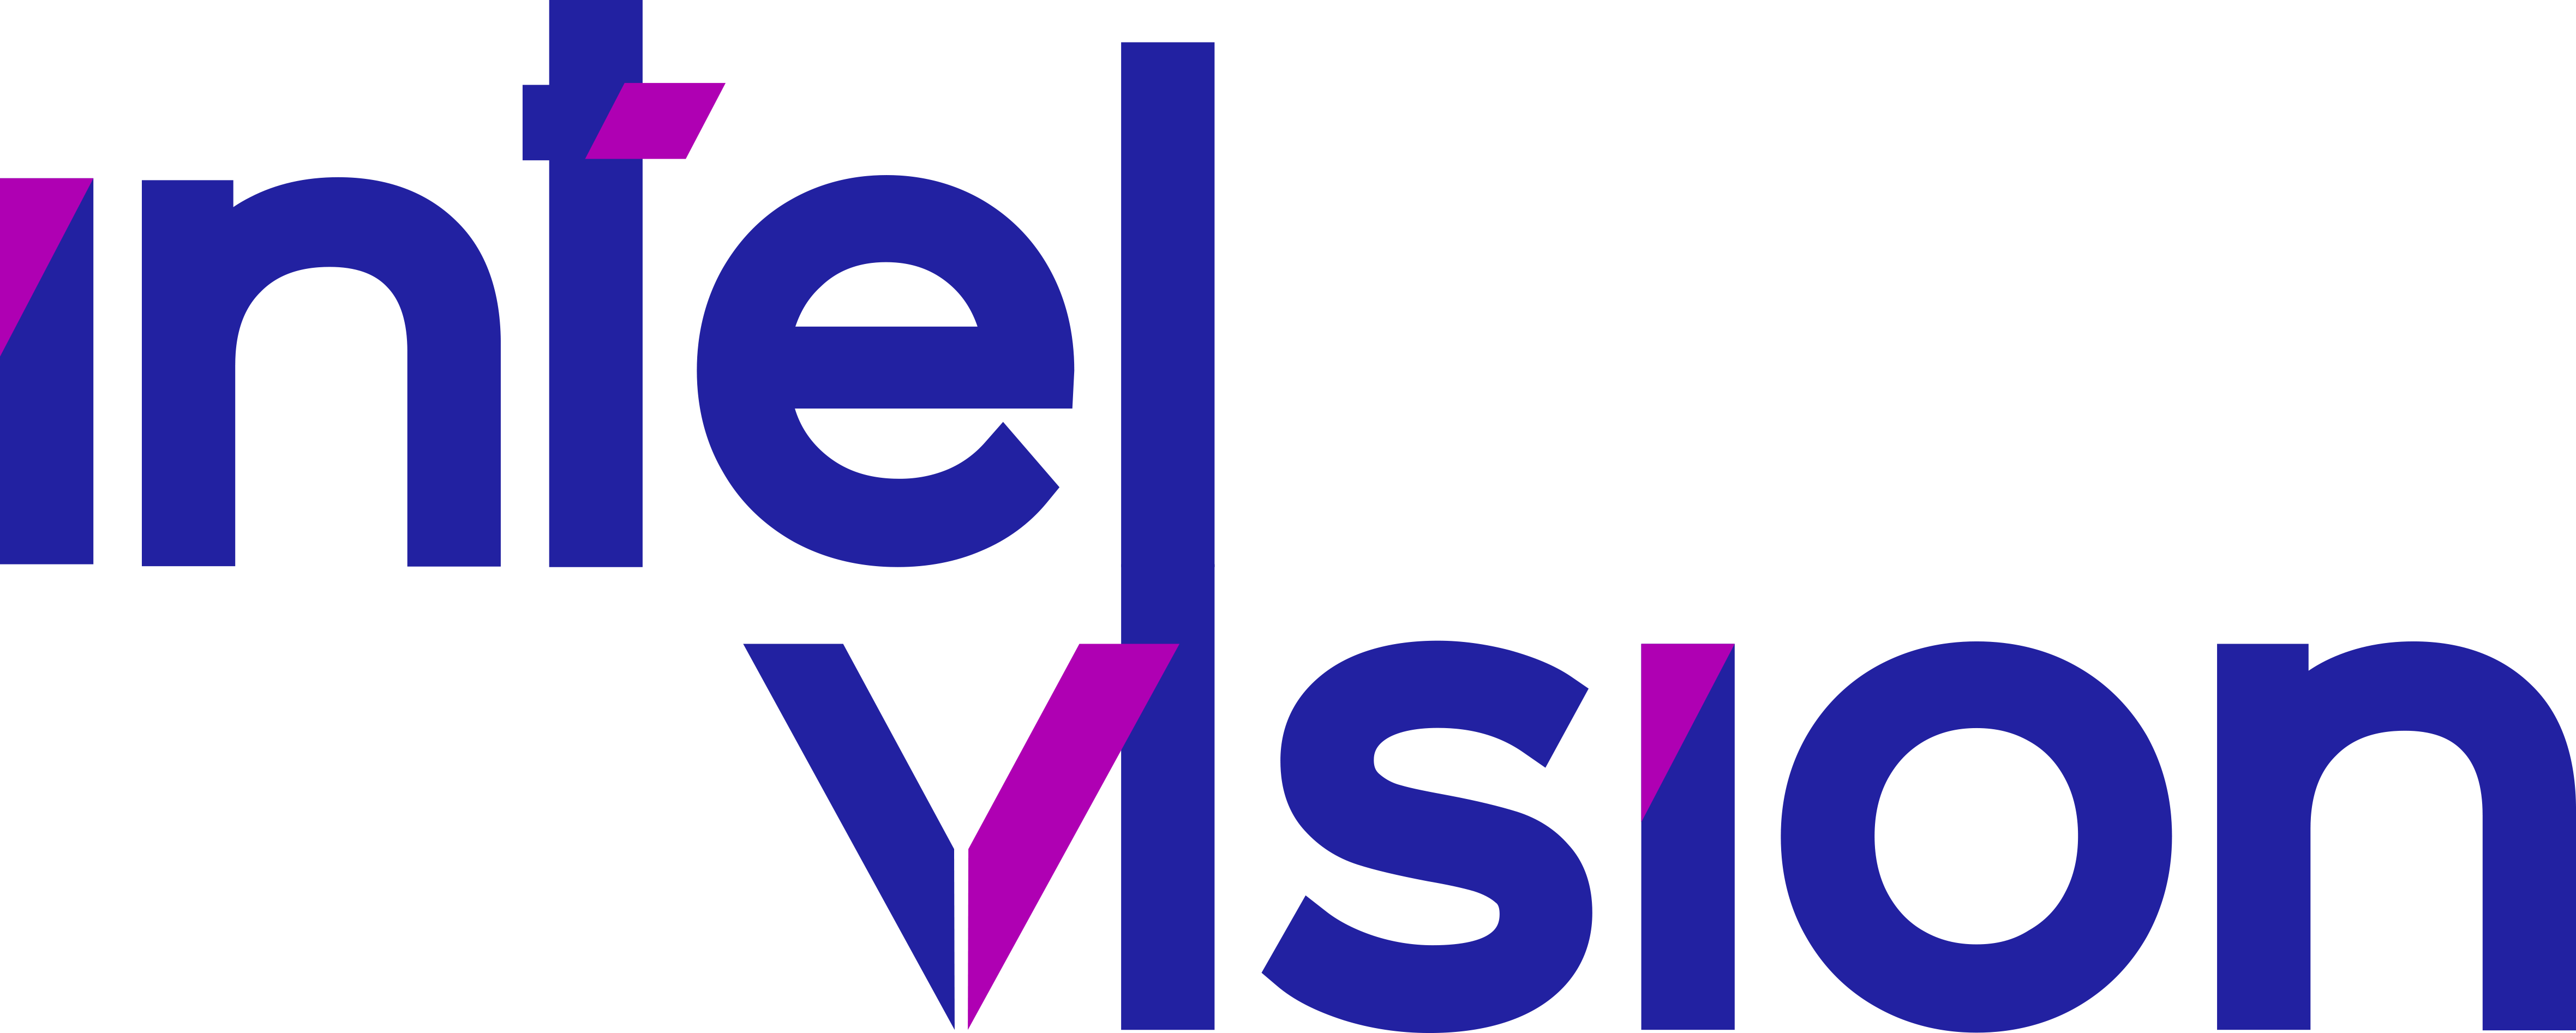 Intelvision company logo